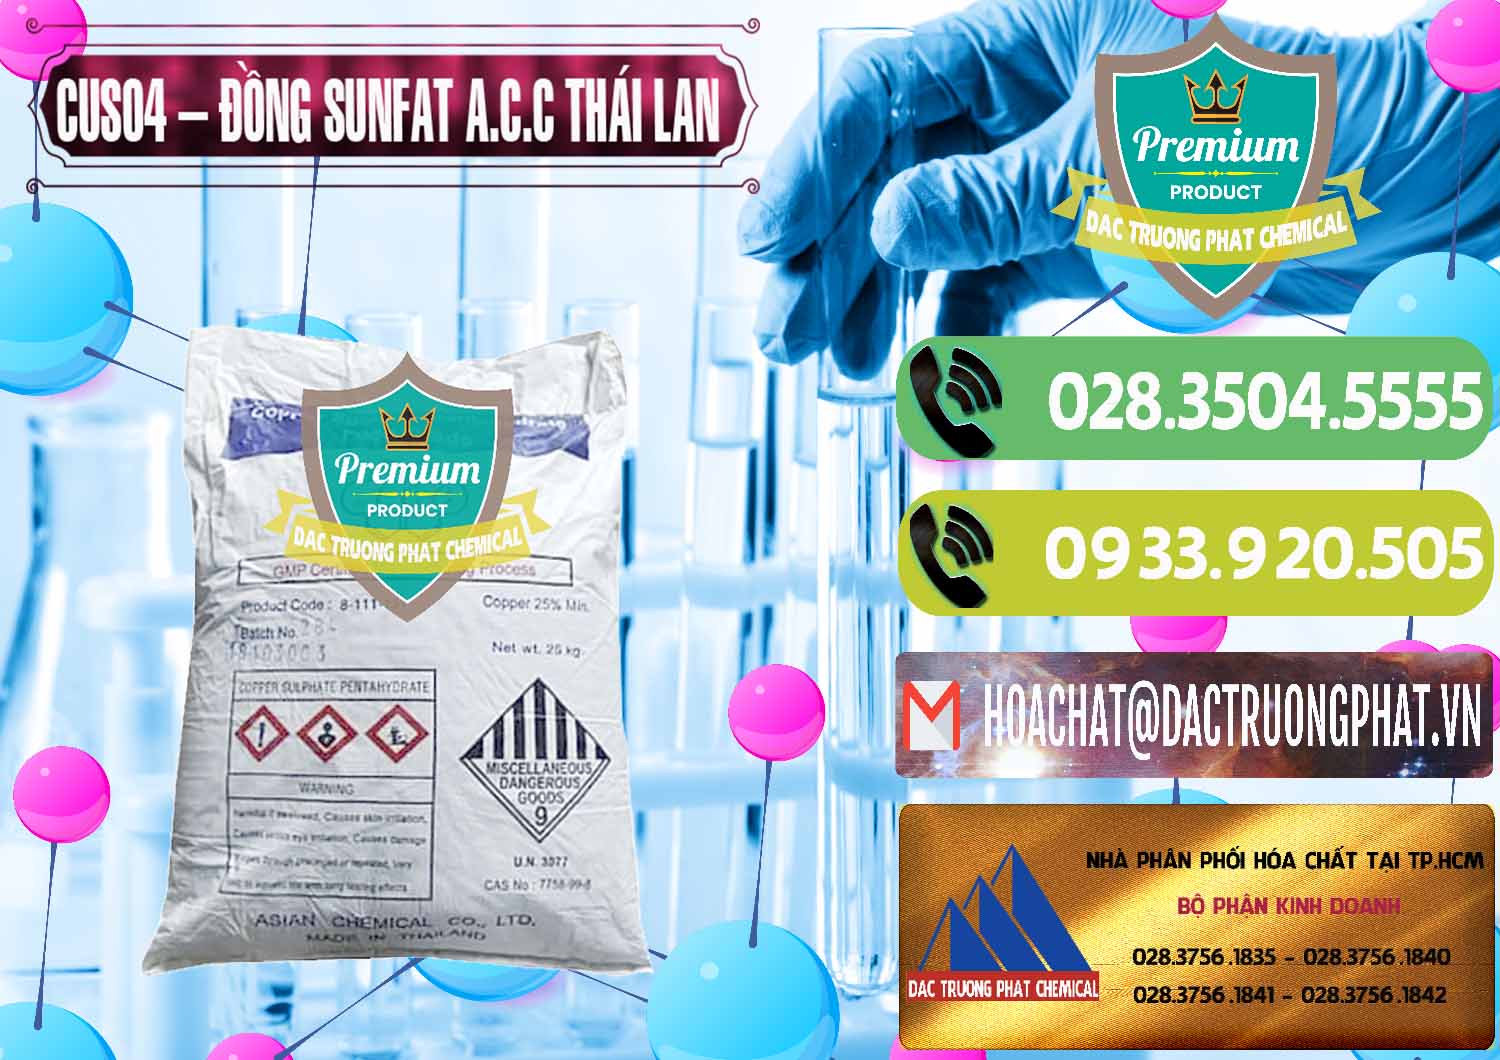 Cty chuyên bán và cung ứng CuSO4 – Đồng Sunfat A.C.C Thái Lan - 0249 - Nơi chuyên bán và cung cấp hóa chất tại TP.HCM - hoachatmientay.vn